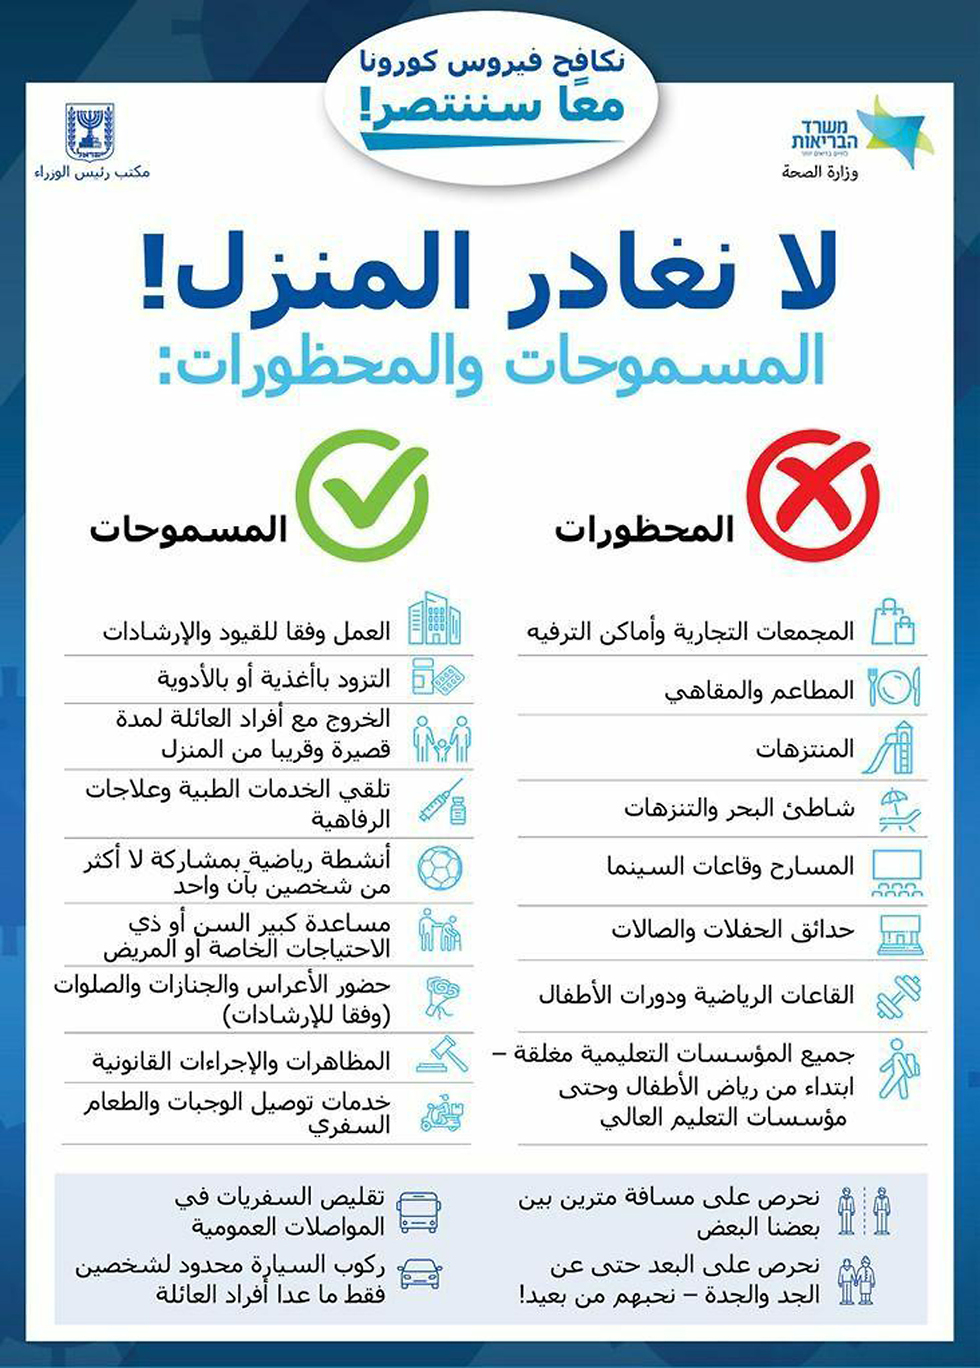 הנחיות קורונה ערבית ערבים ערביי ישראל משרד הבריאות ()